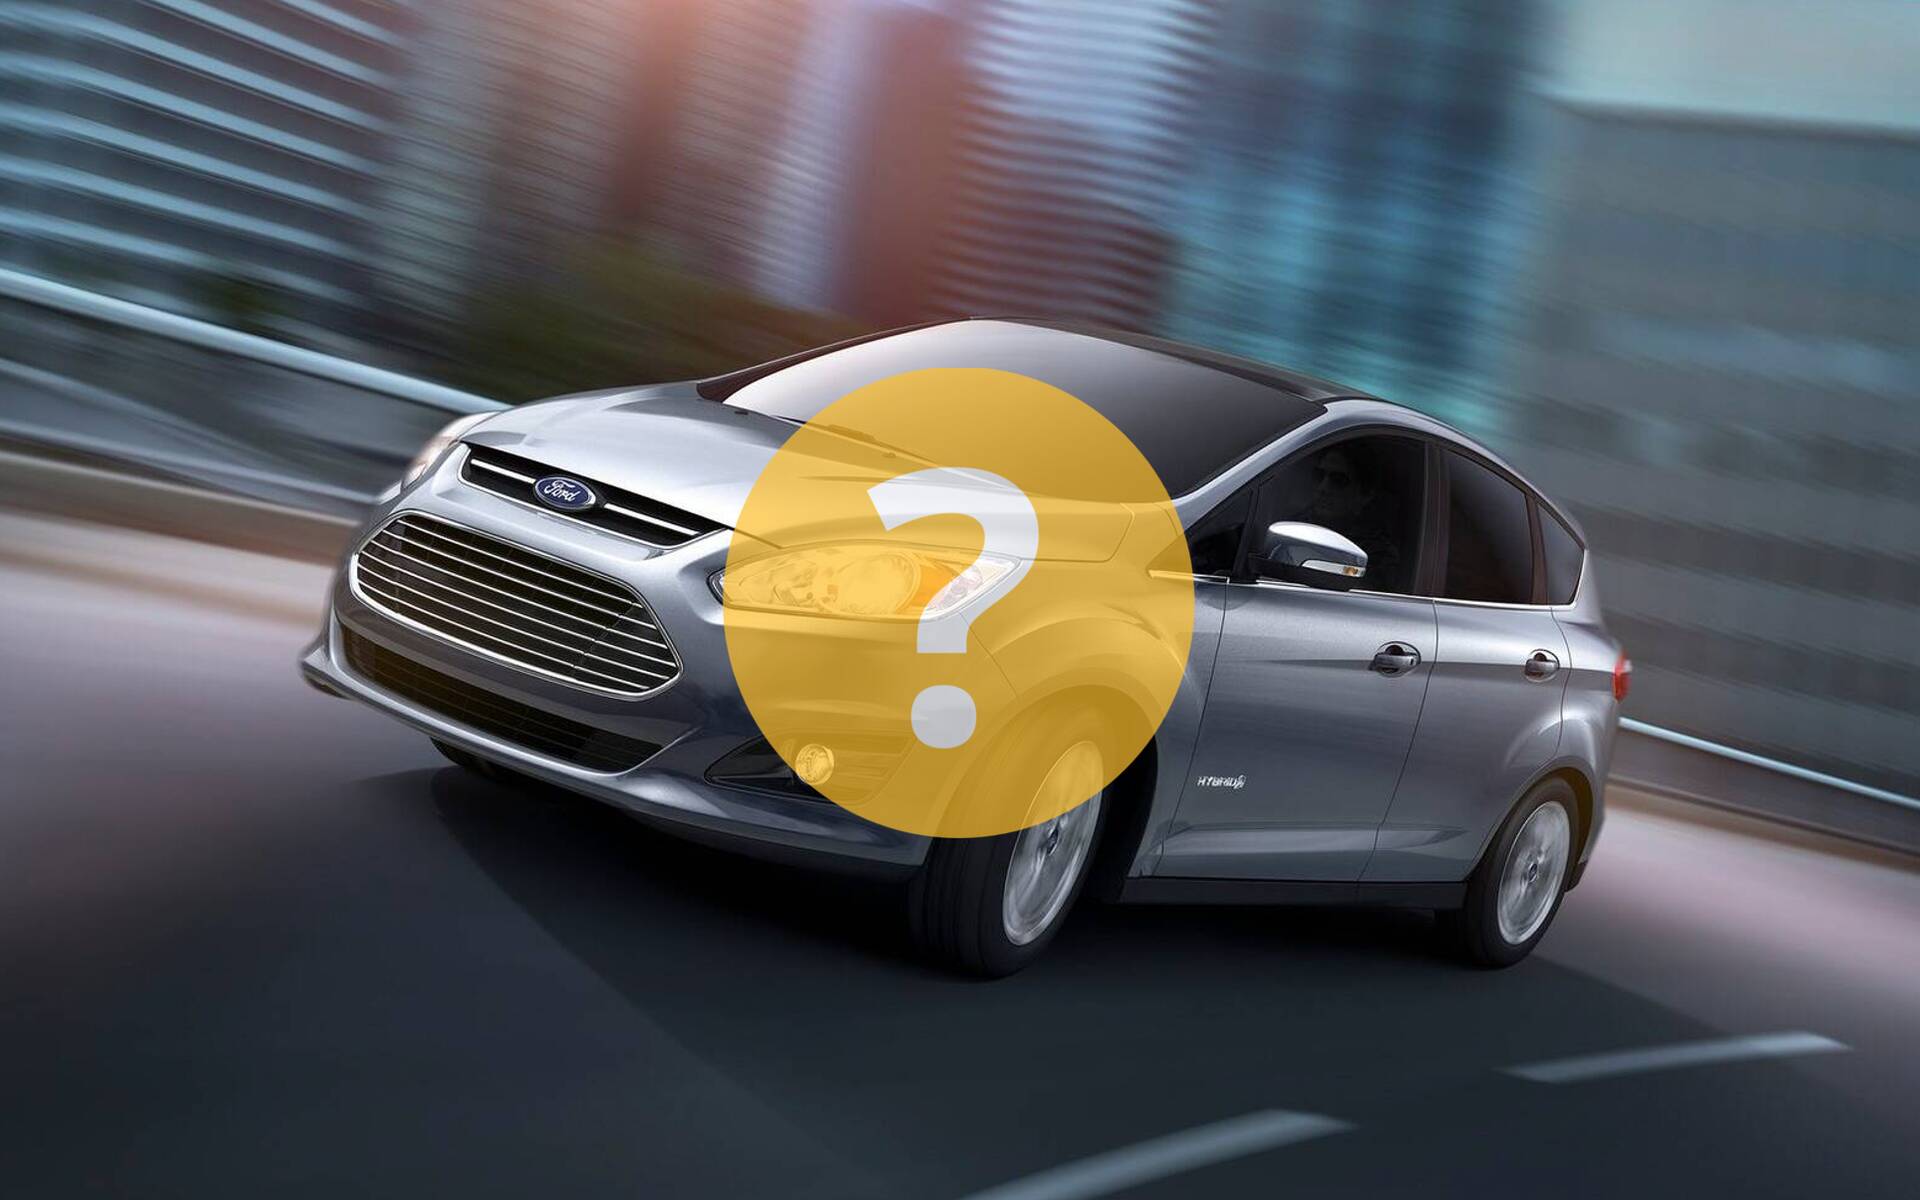 Quelles sont vos impressions du Ford C-MAX Hybrid 2016 ?